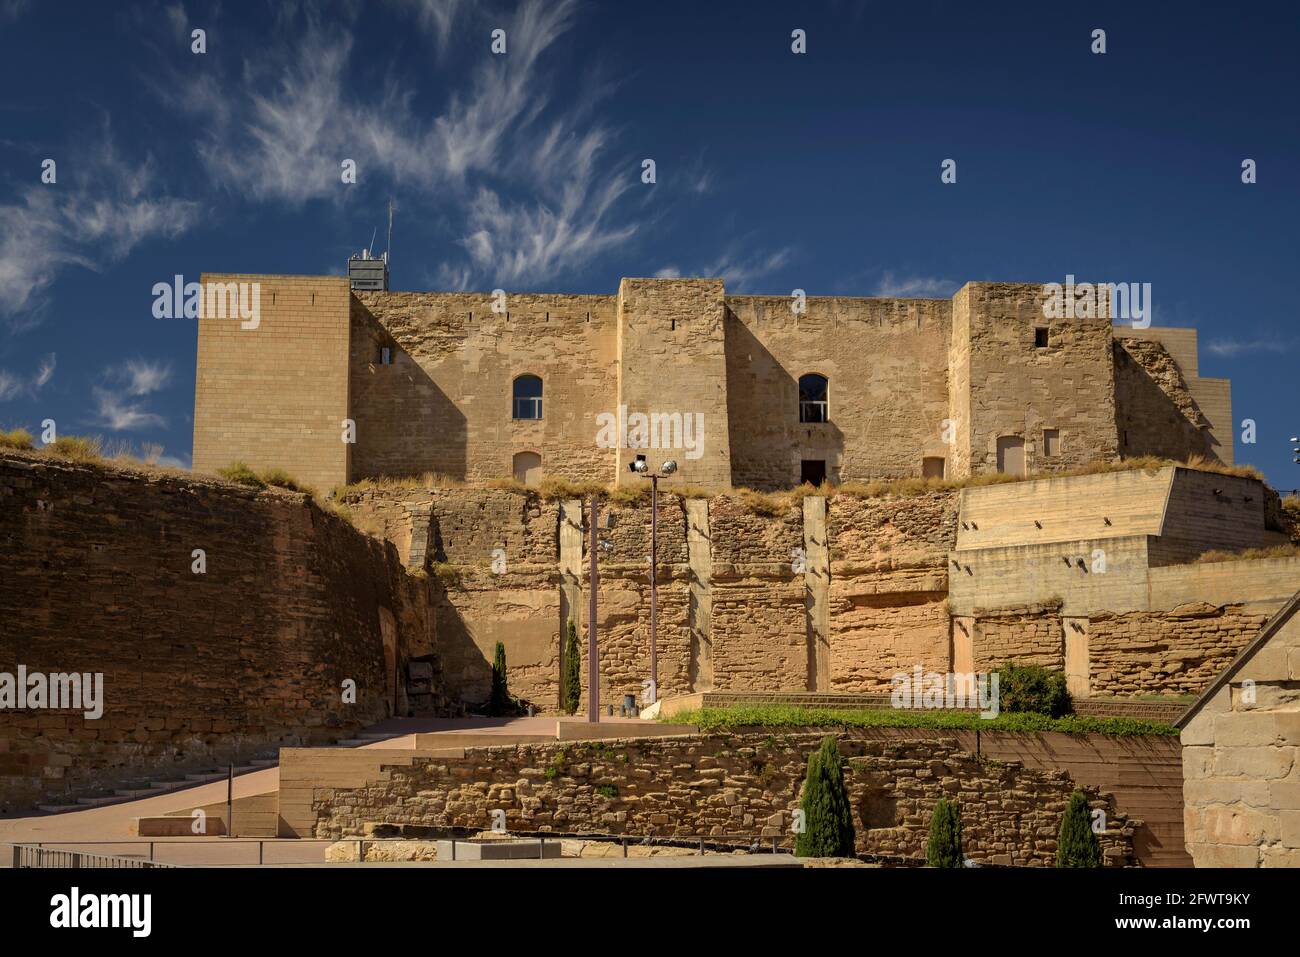 Exteriors of the Castell del Rei or La Suda castle (Lleida, Catalonia, Spain) ESP: Exteriores del Castillo del Rey o La Suda (Lérida, España) Stock Photo